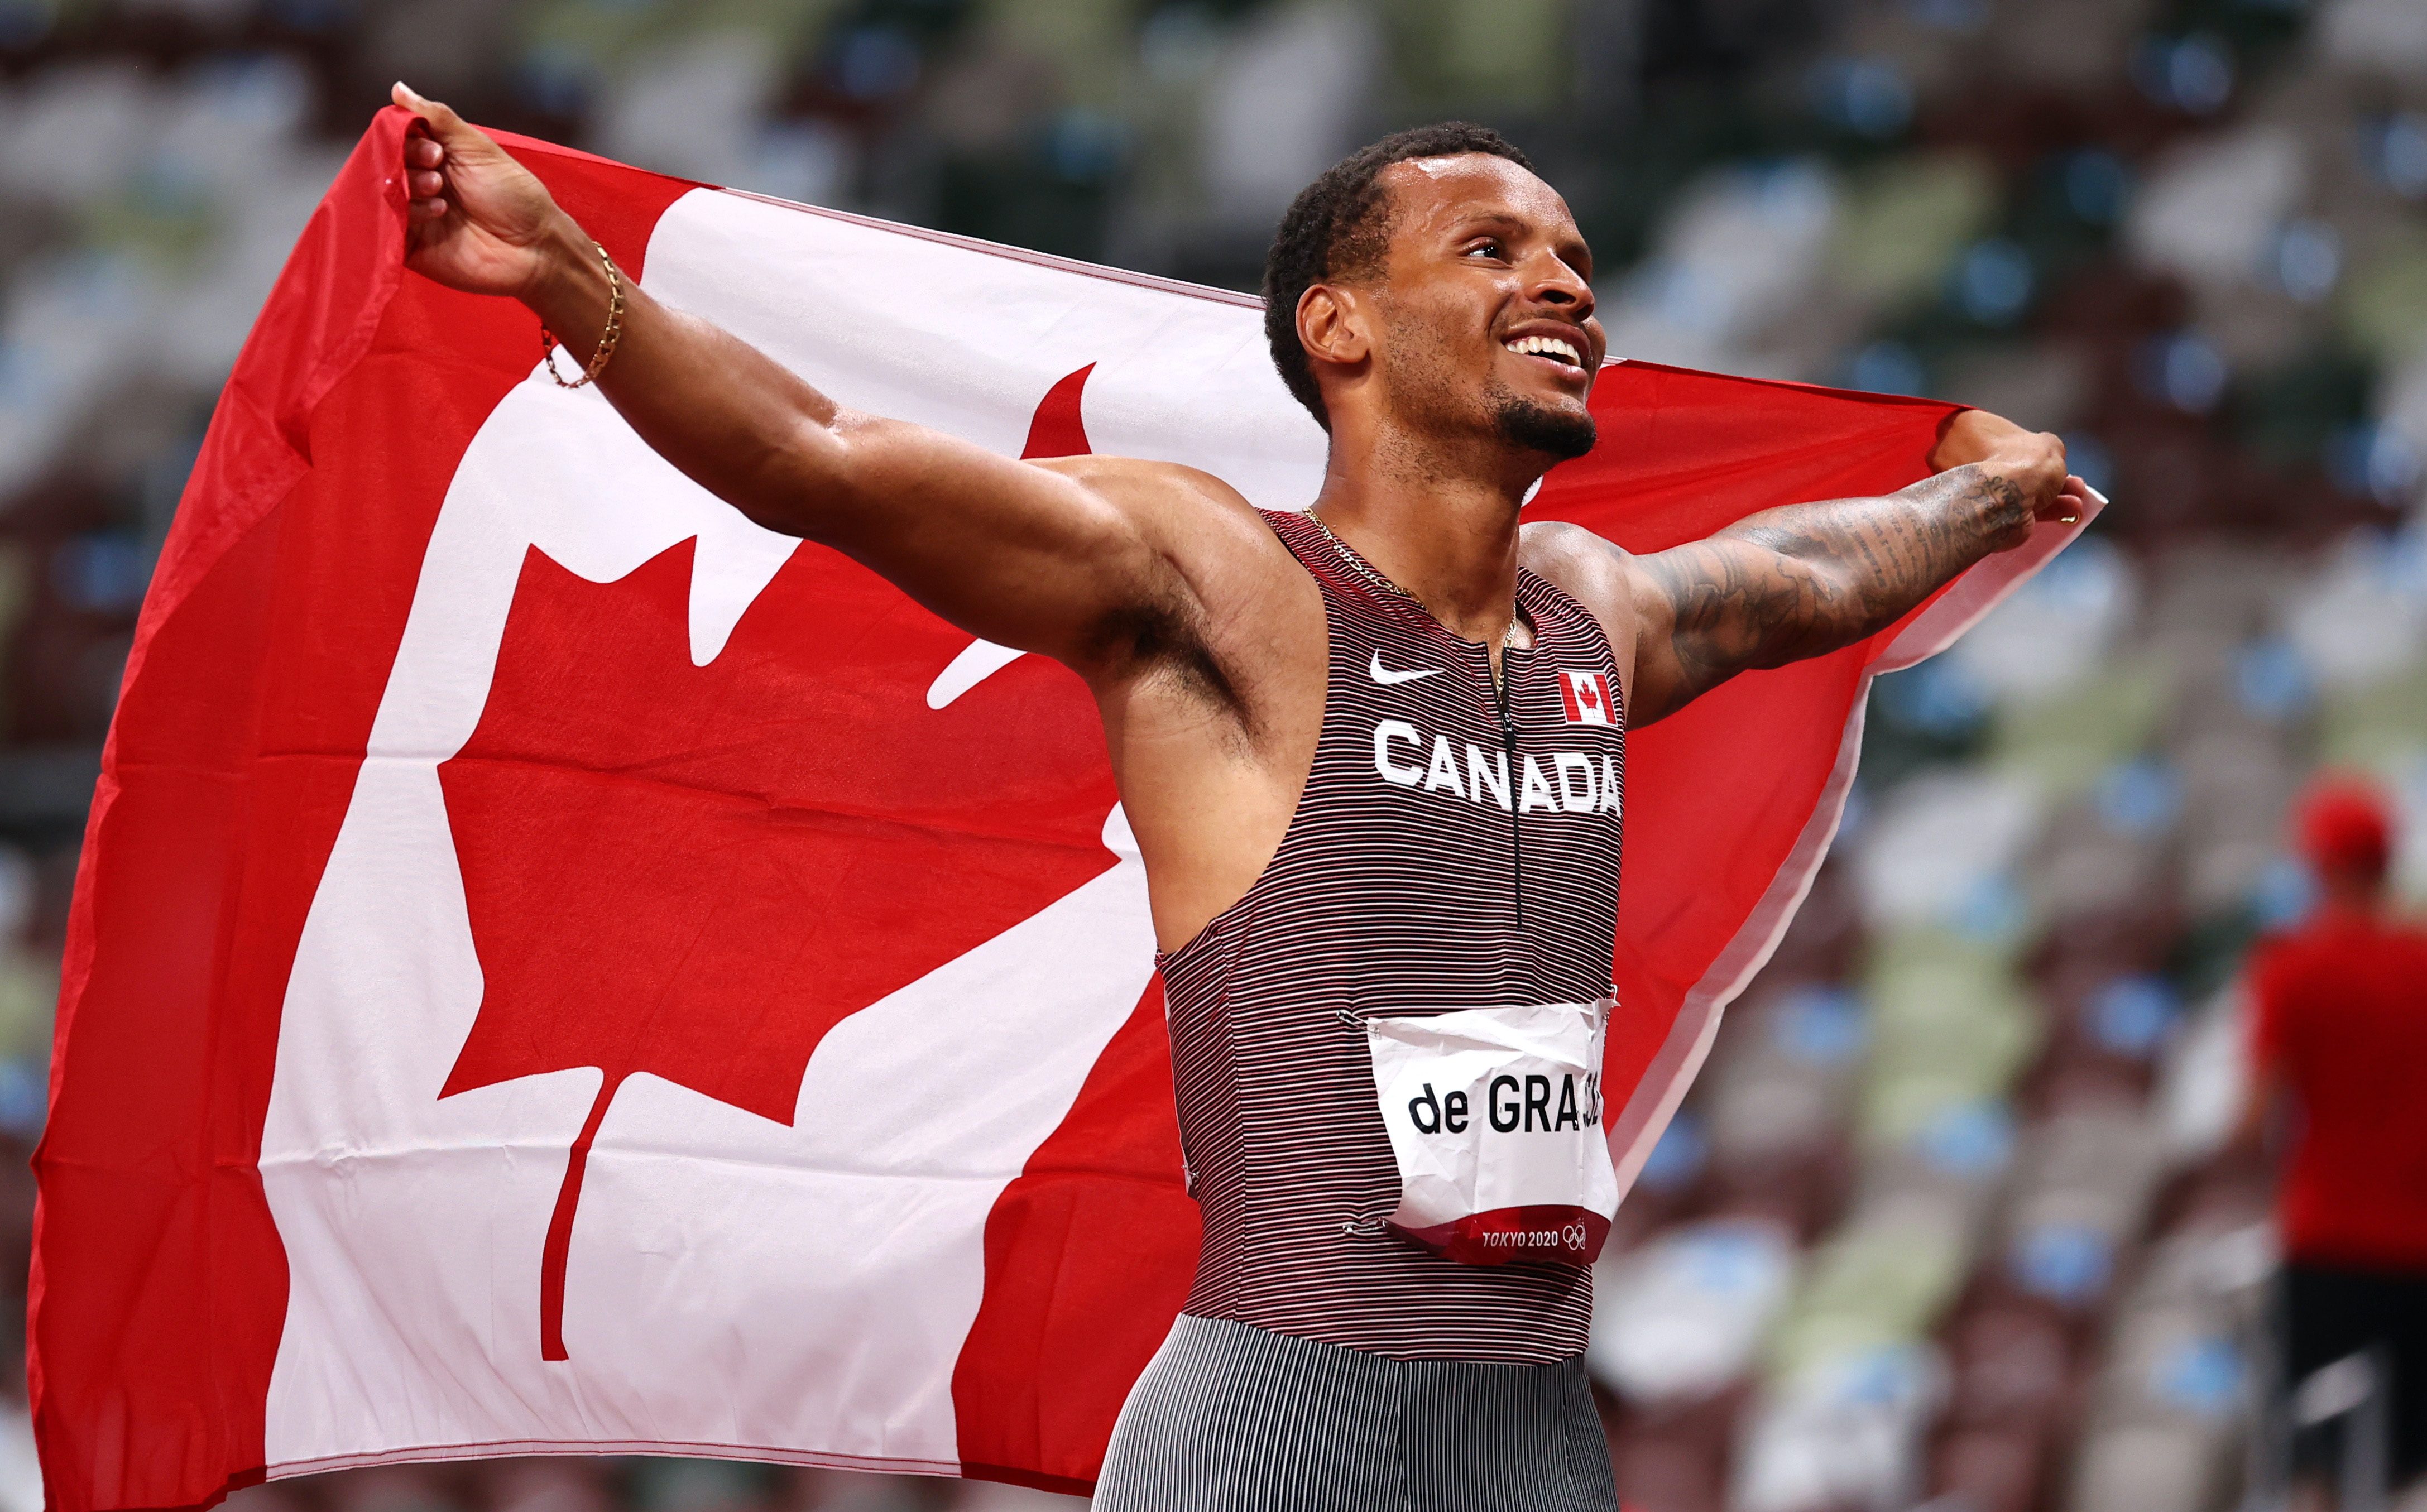 Canada’s De Grasse ends long wait with 200m gold